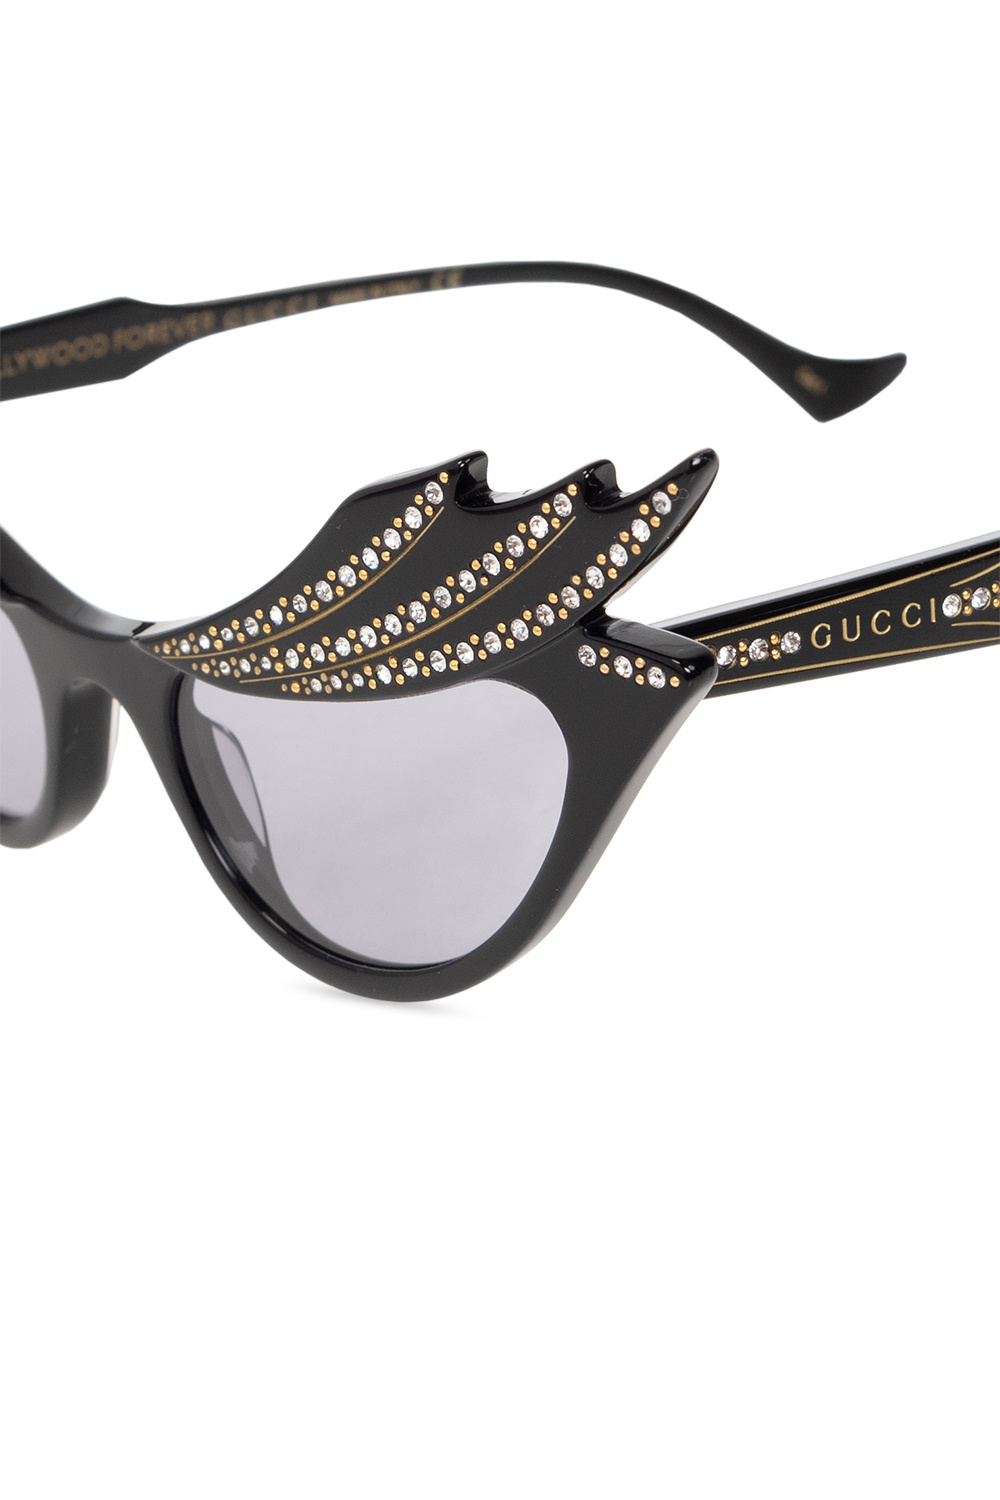 Gucci SL M70 cat-eye sunglasses